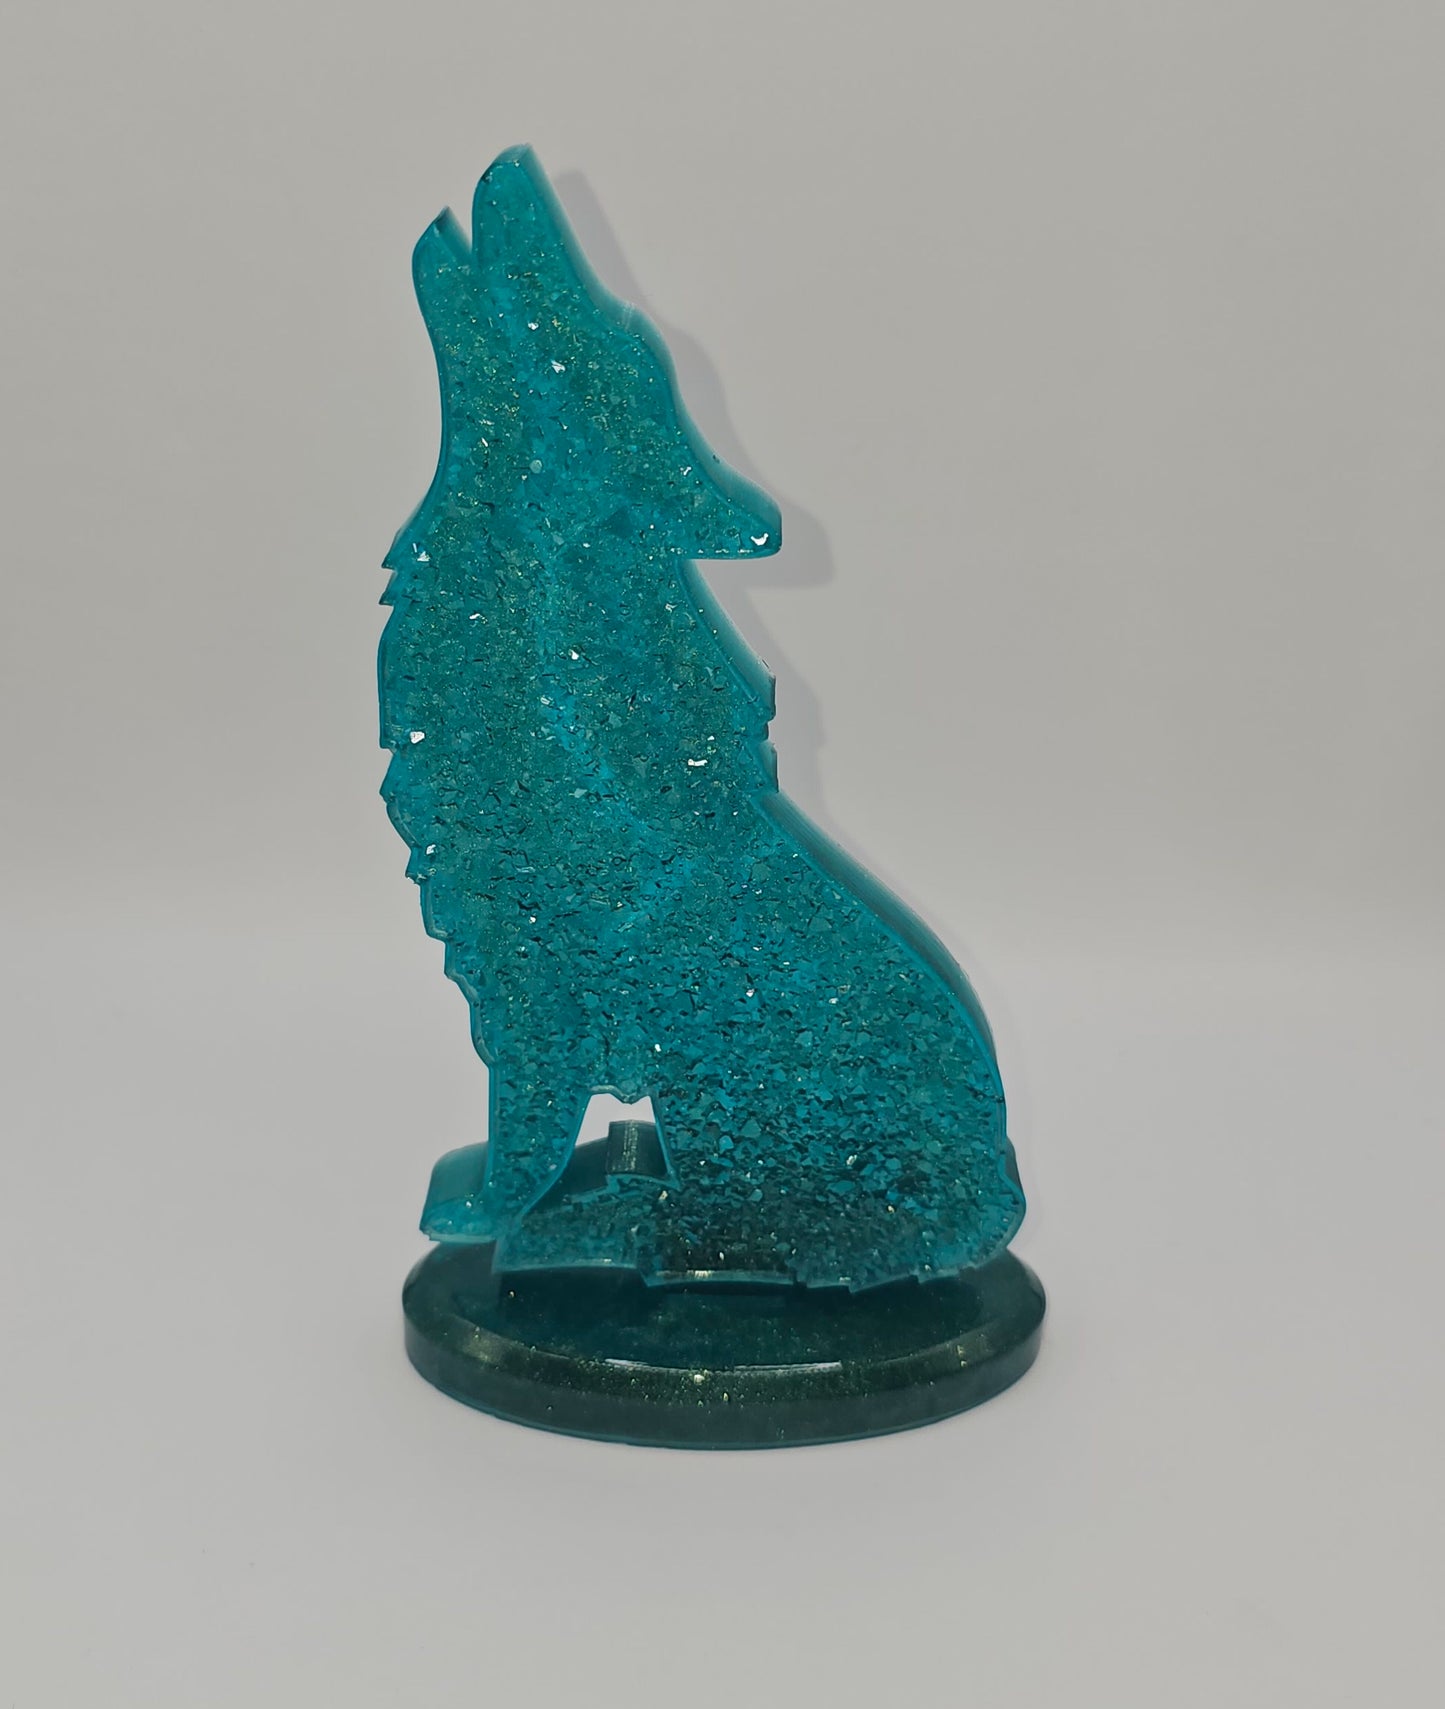 Loup effet cristaux turquoise en résine époxy